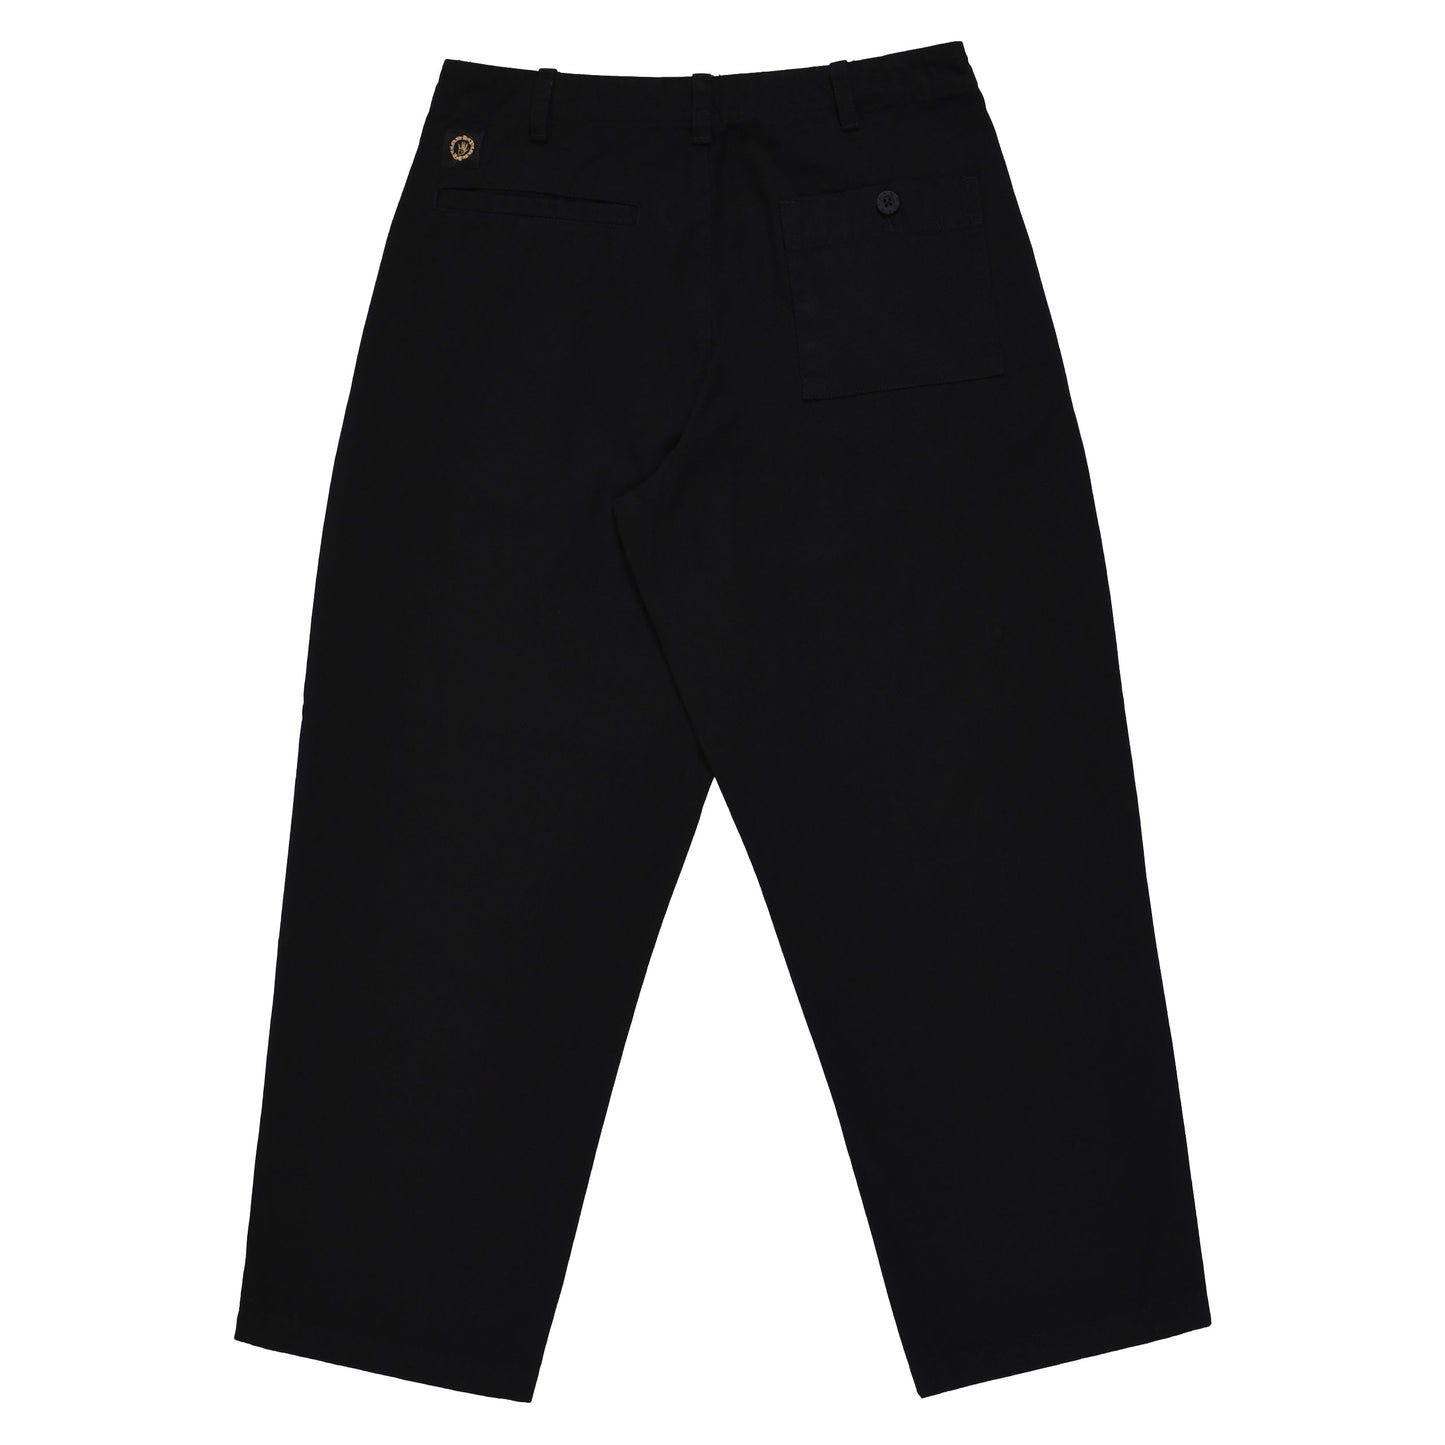 Quasi Warren Trouser Pant (Washed Black) - Black